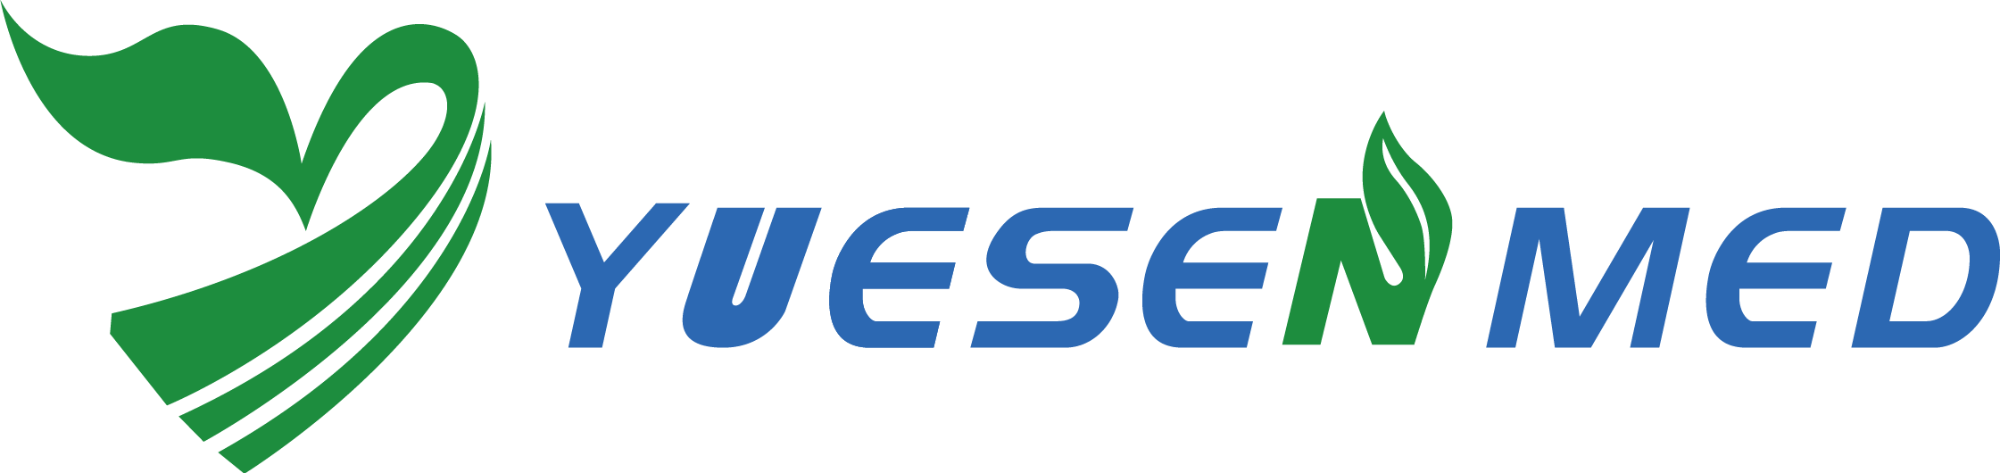 专业医疗设备供应商-Yuesen Med